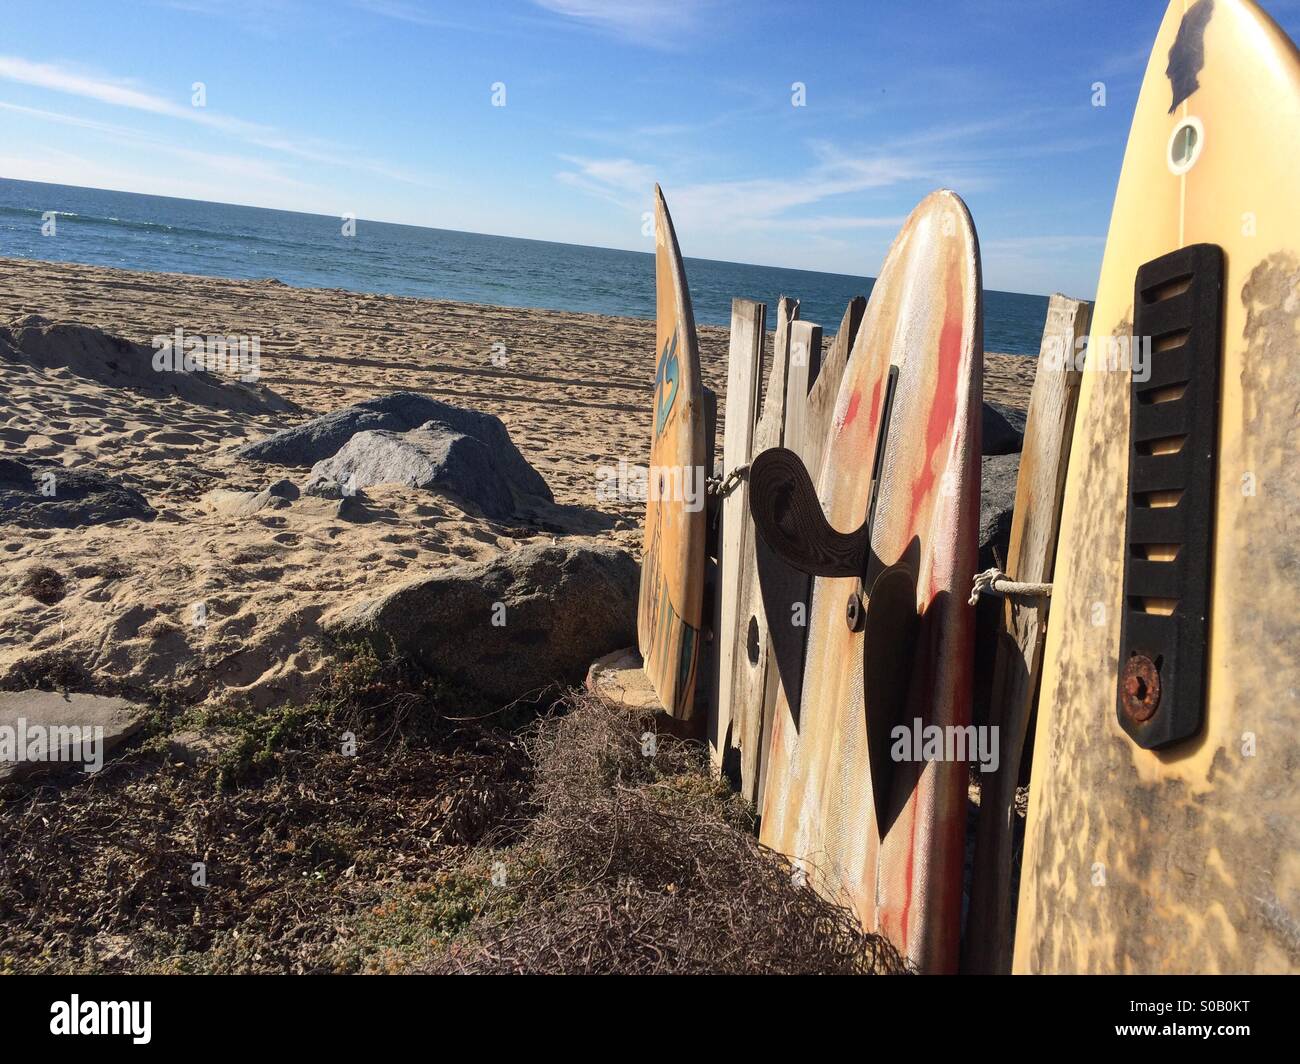 Una cadena de jubilados tablas de surf a lo largo de una acogedora cabaña en la playa. Imperial Beach, CA. Foto de stock